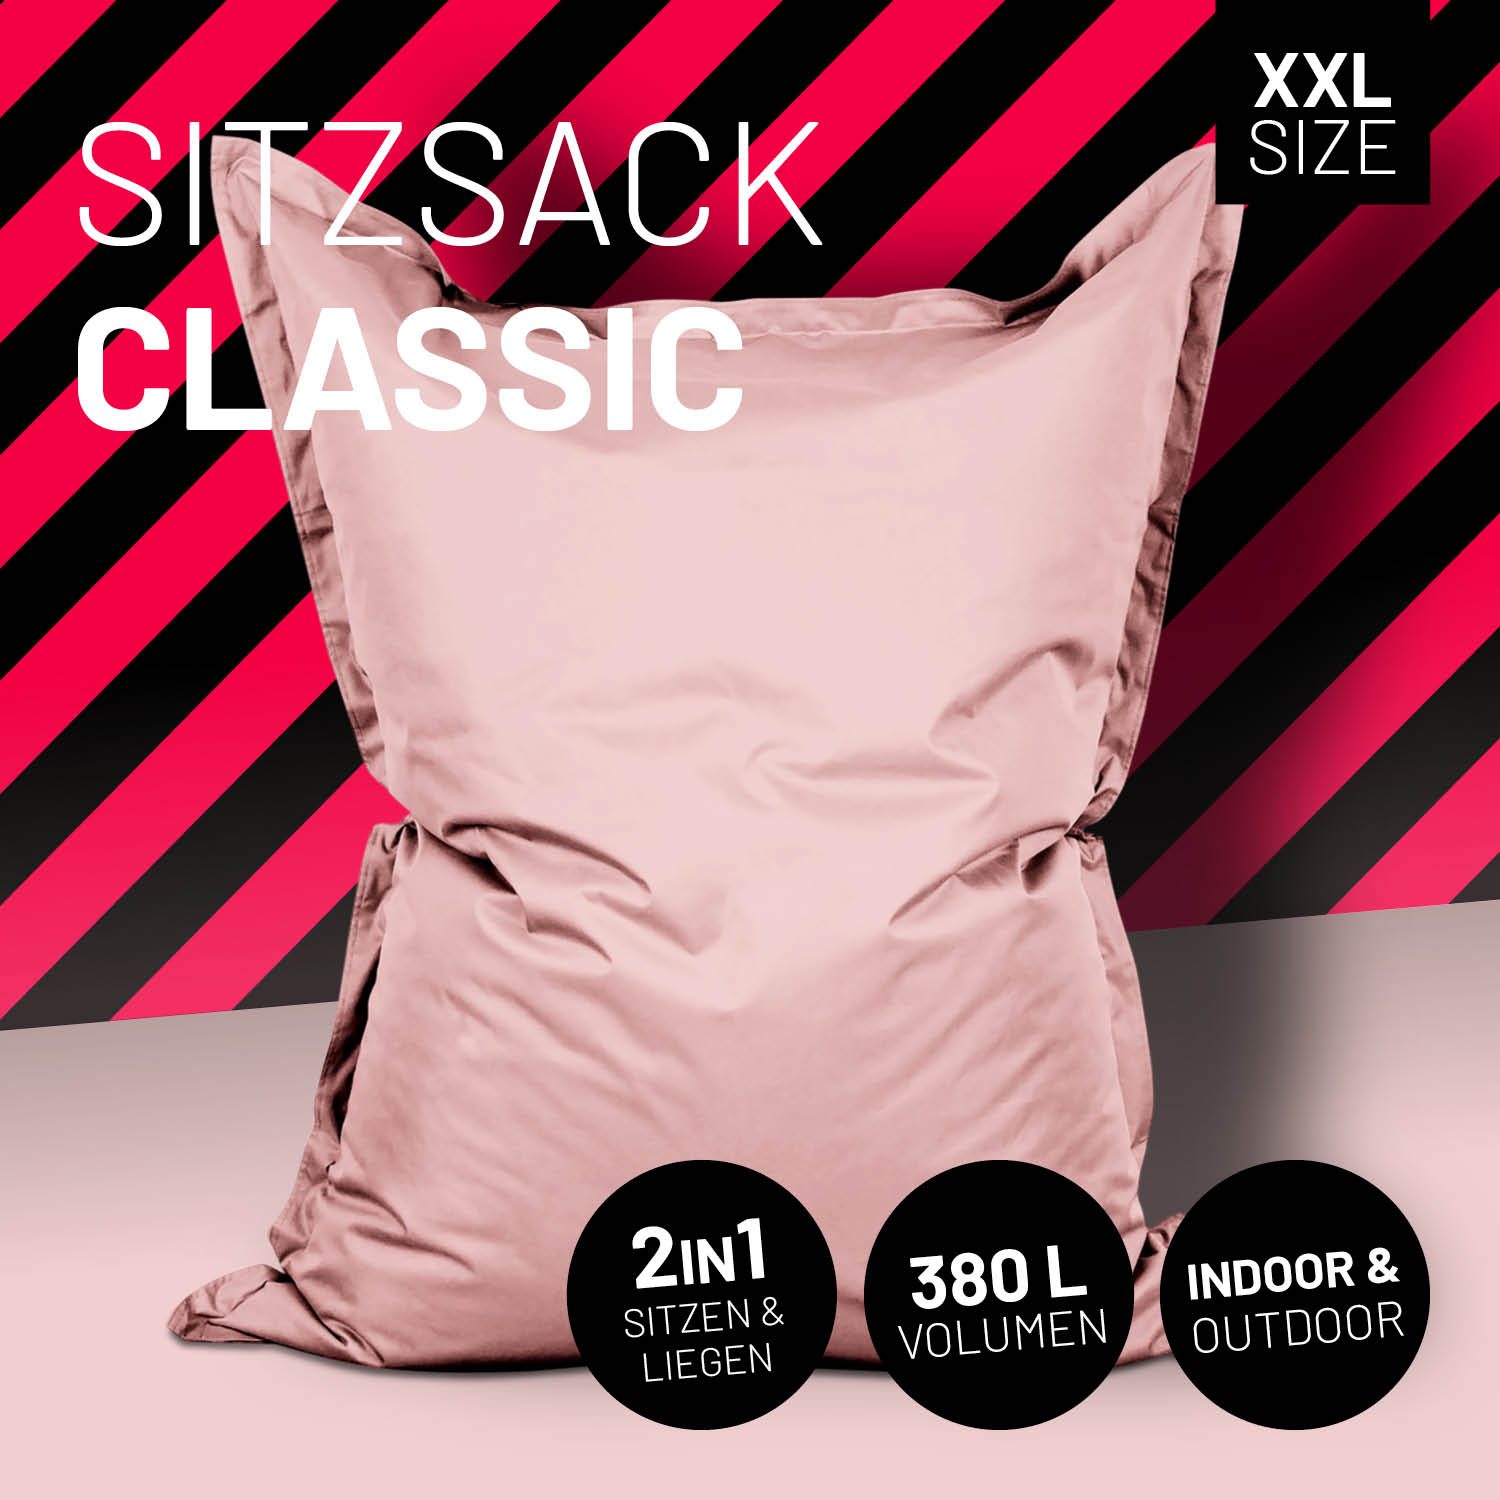 Sitzsack Classic XXL (380 L) - indoor & outdoor - Pastell Pink